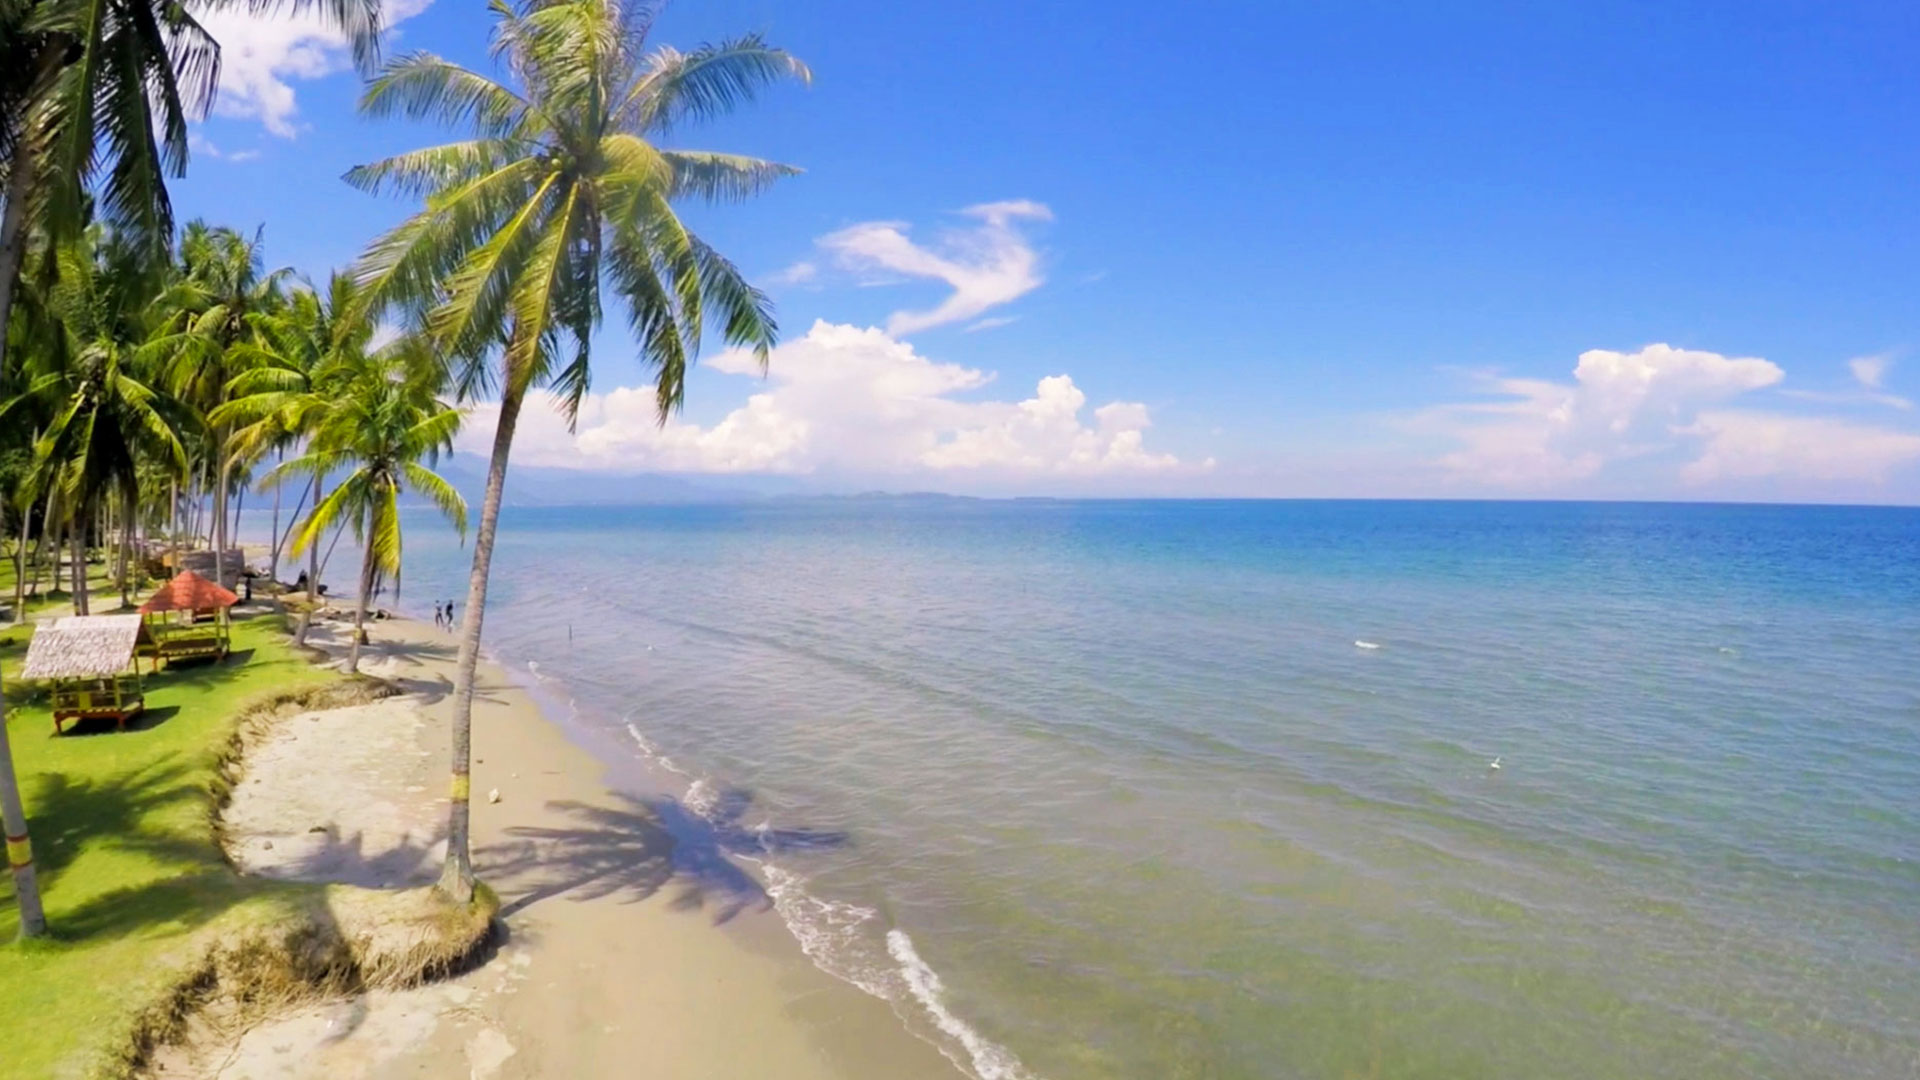 Pantai Mampie Surga Kecil di Sulawesi Barat - Sulawesi Barat